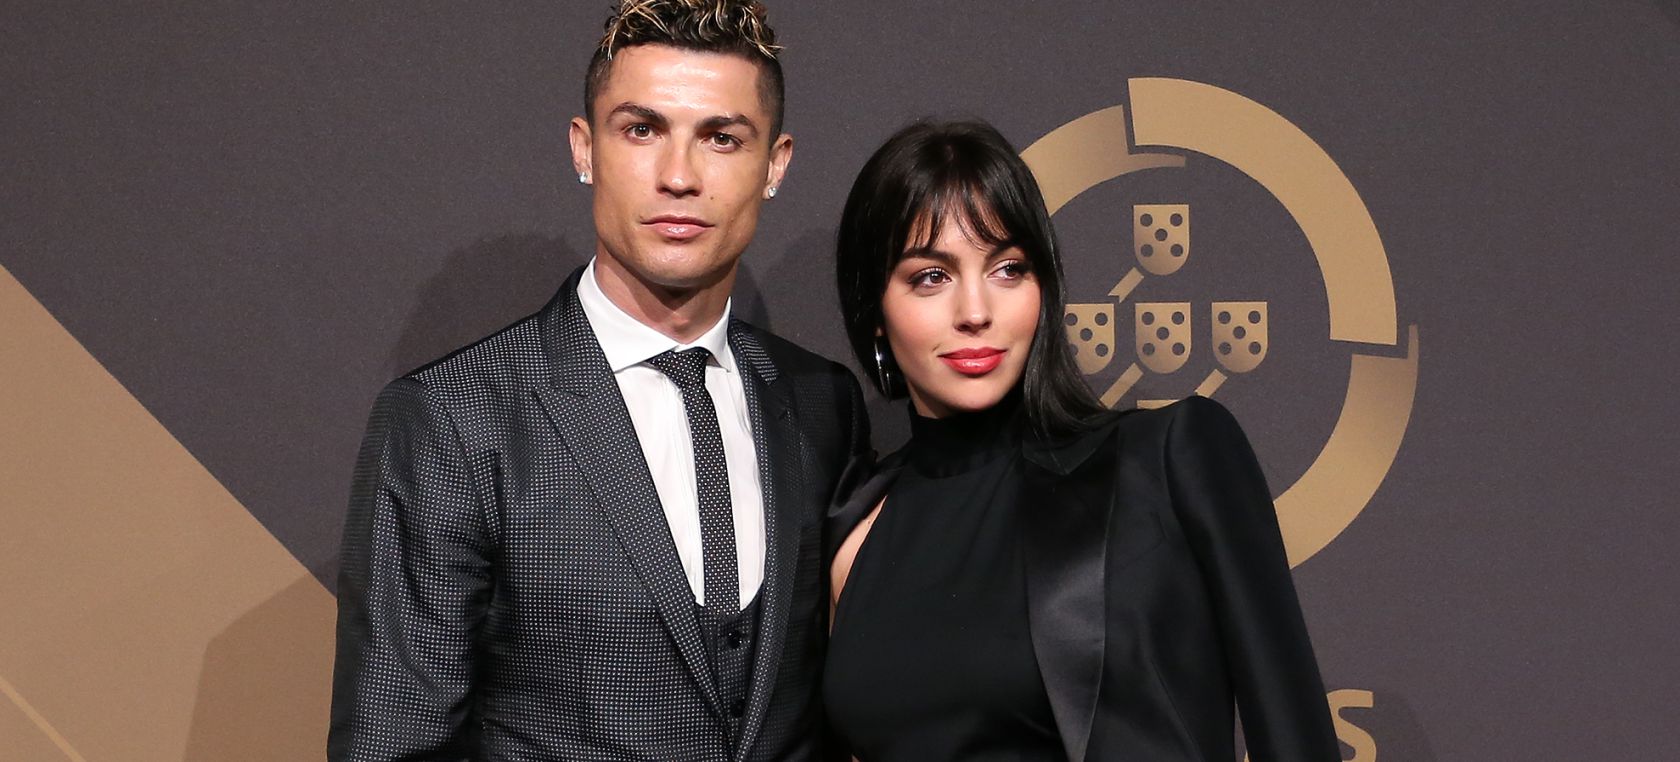 La boda secreta de Georgina Rodríguez y Cristiano Ronaldo | Love 40 | LOS40